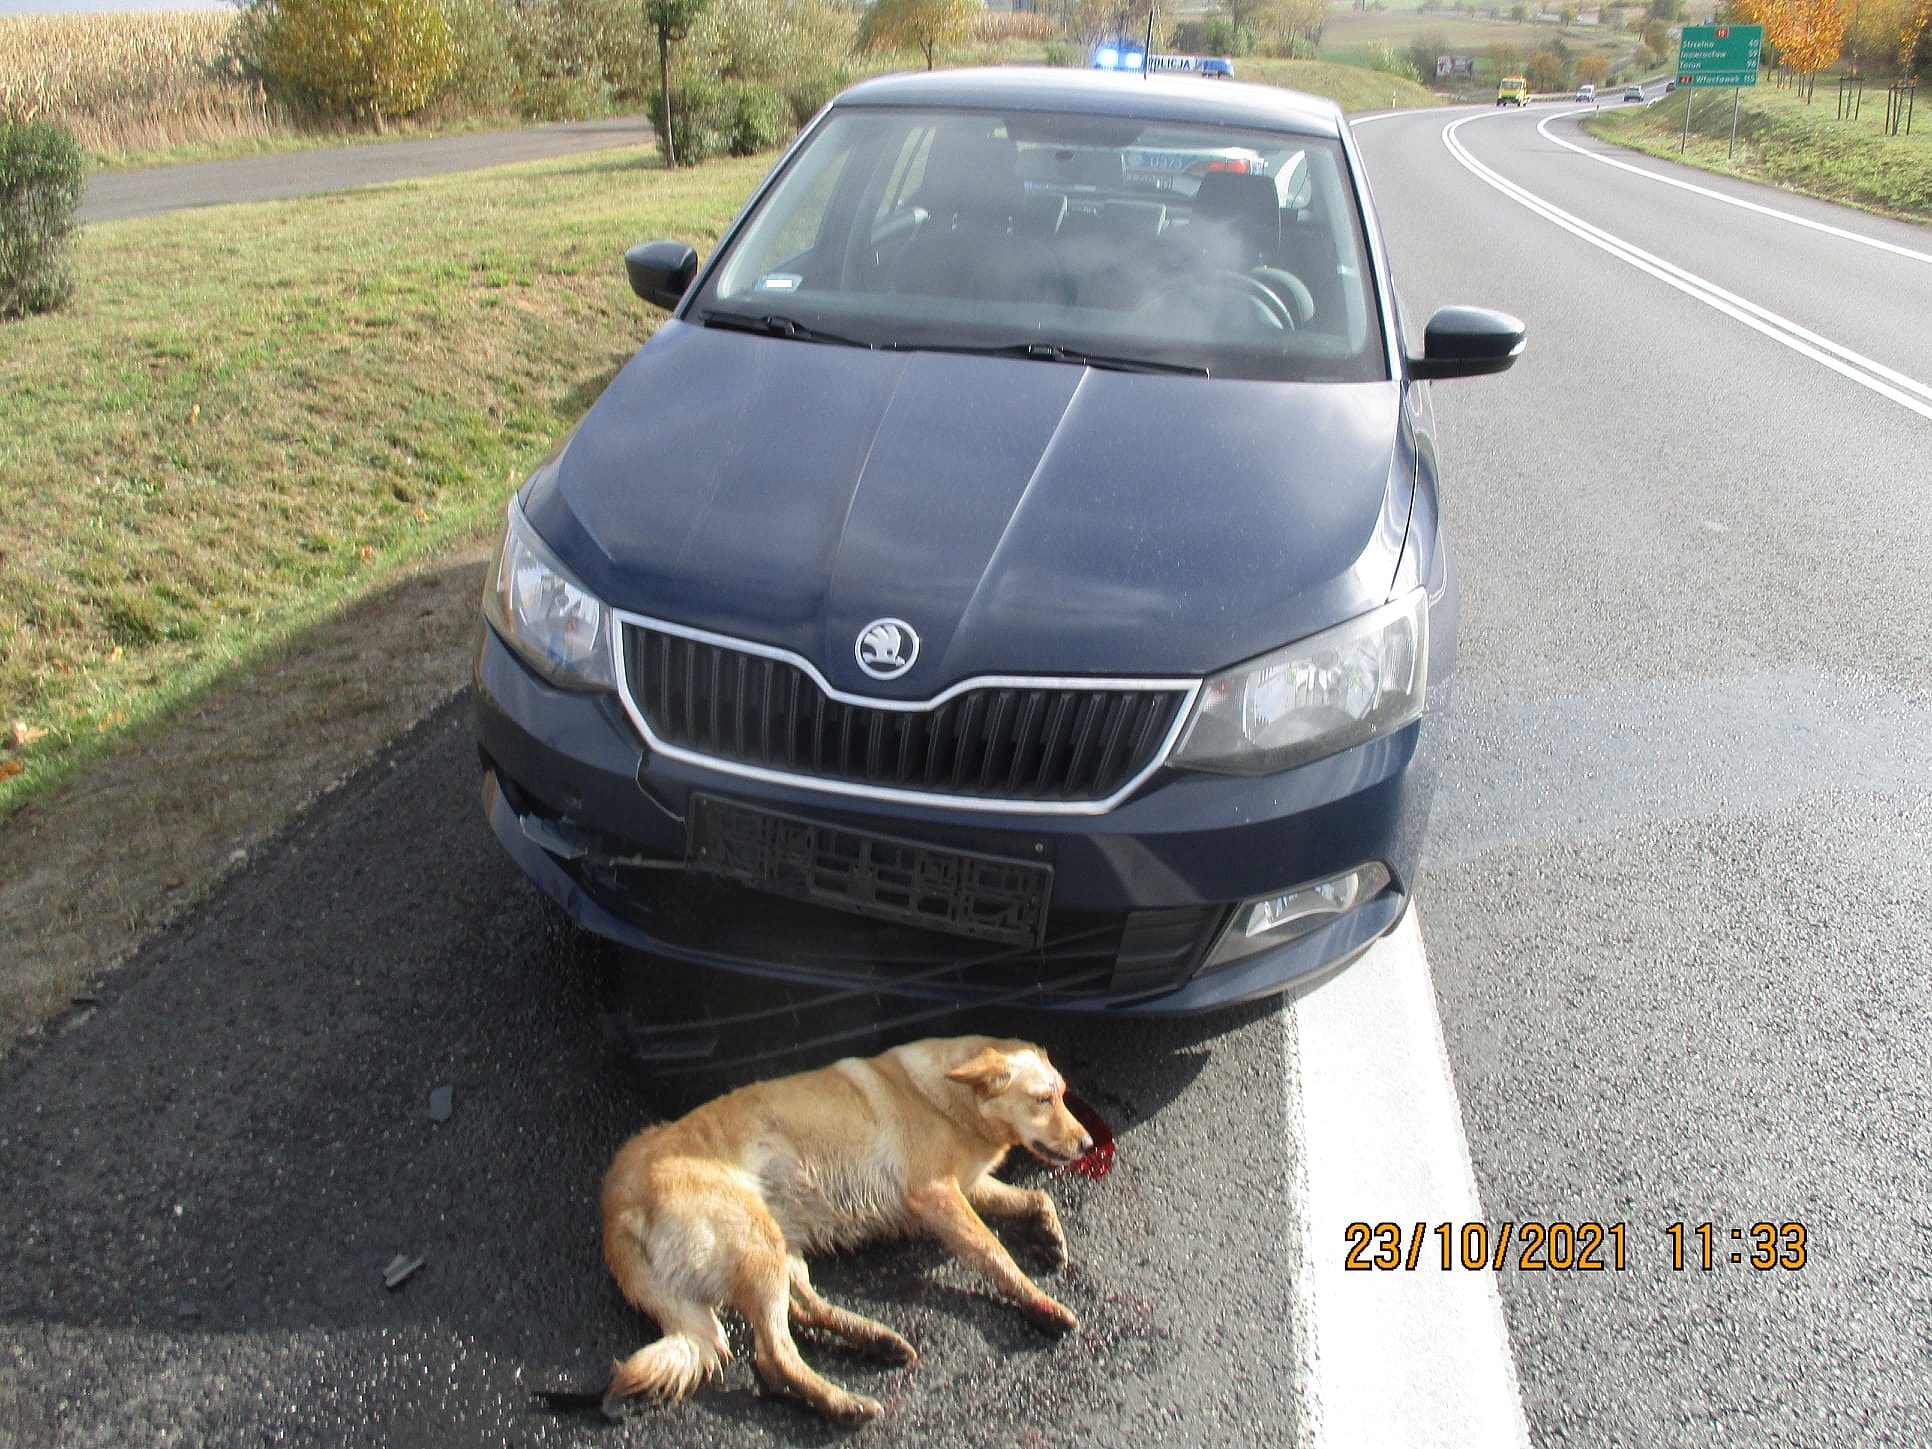 Potrącił psa, któy wbiegł pod samochód! Z pomocą przyszli policjanci!